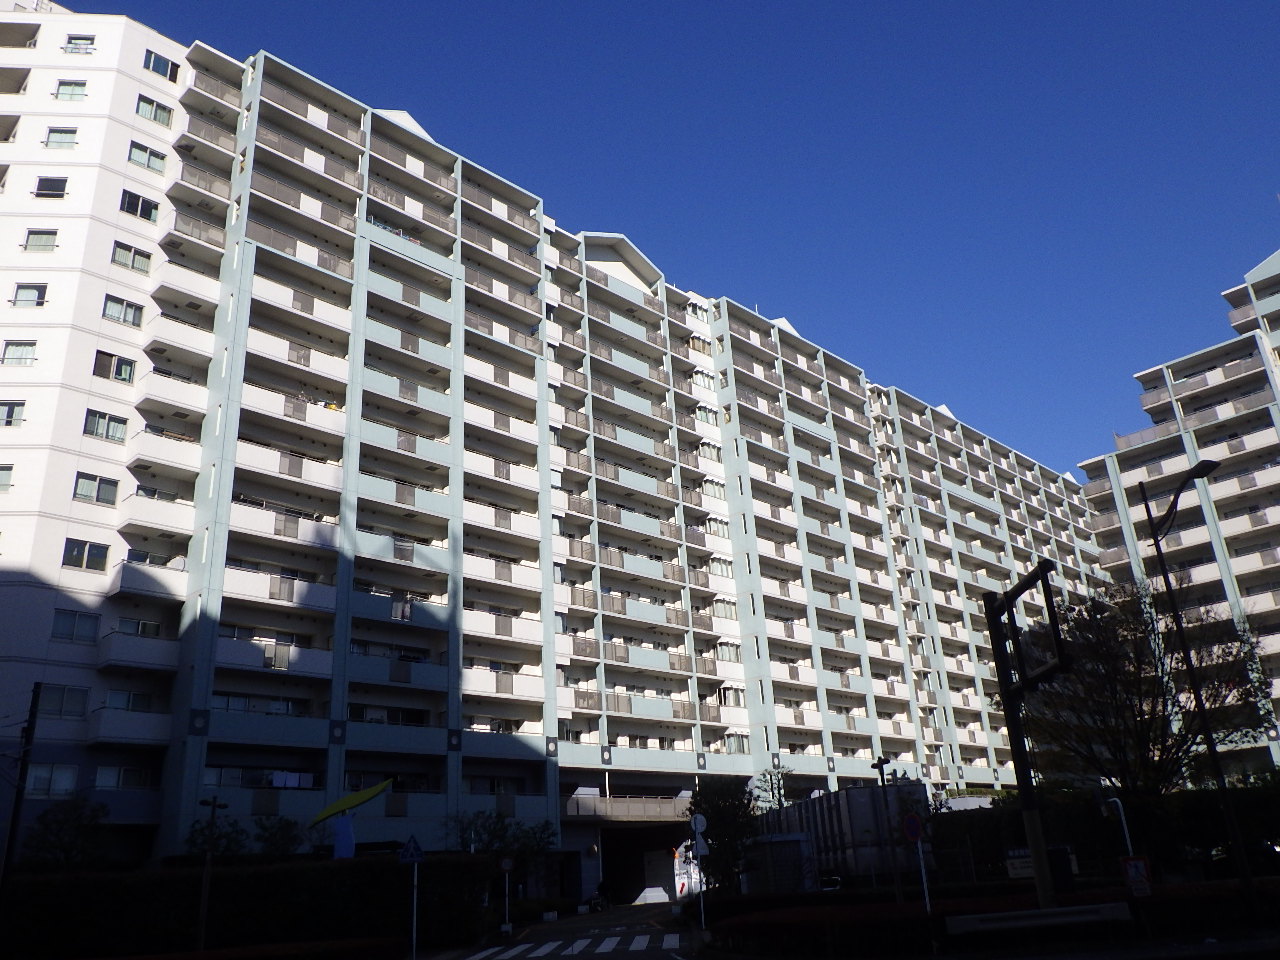 横須賀市某マンション大規模修繕工事 （管理組合様の要望により物件名は伏せております。）